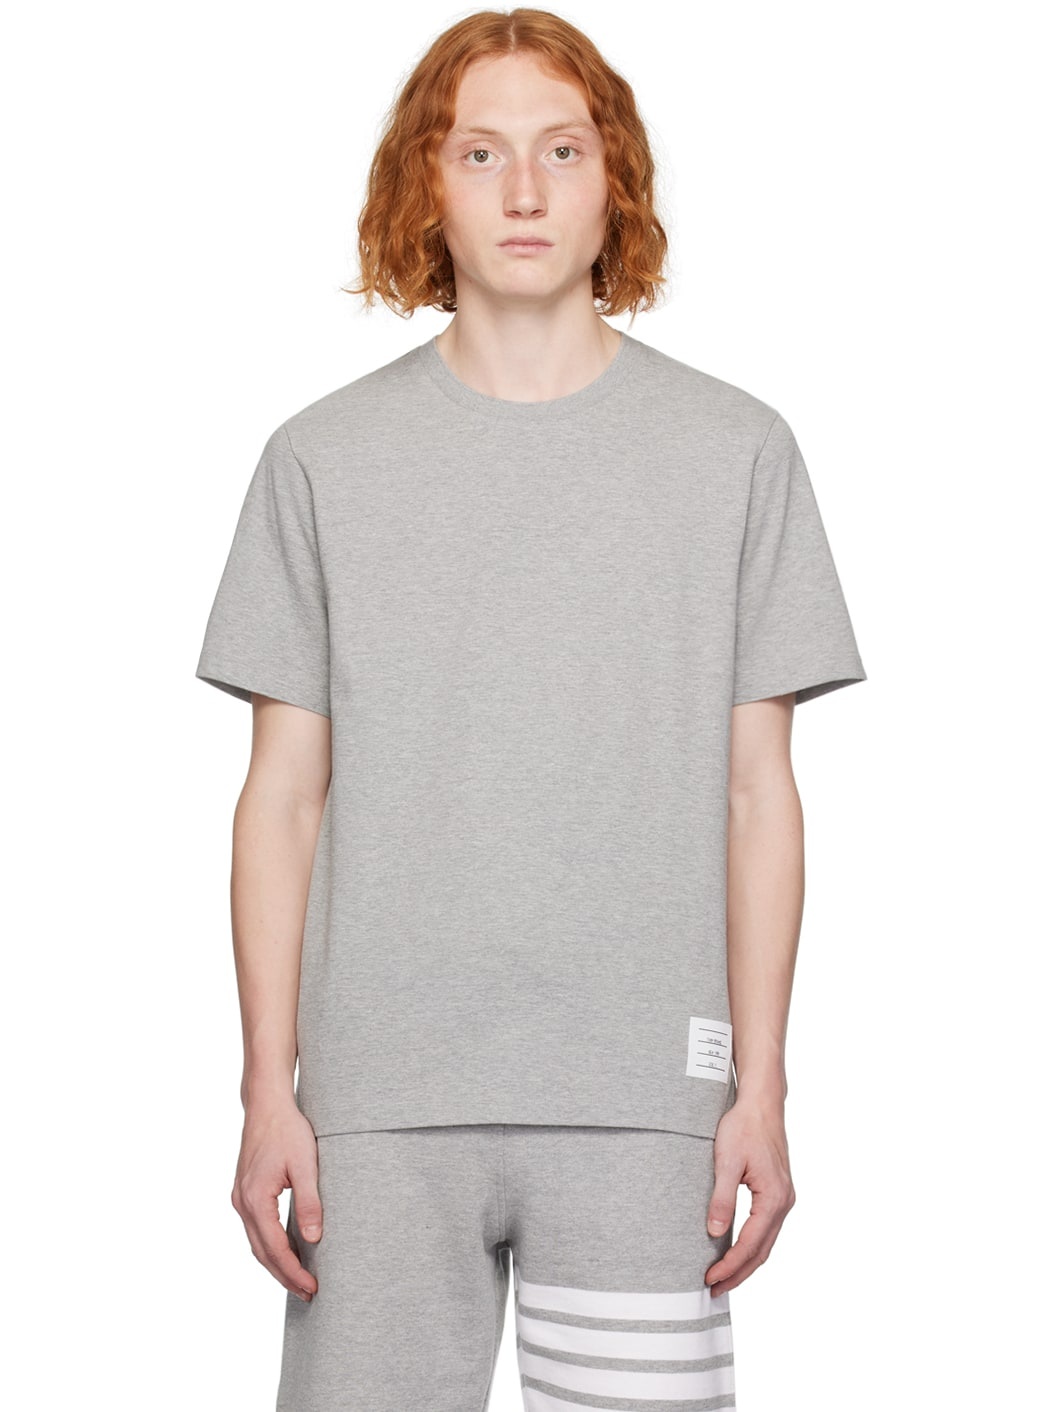 Gray Tennis-Tail T-Shirt - 1